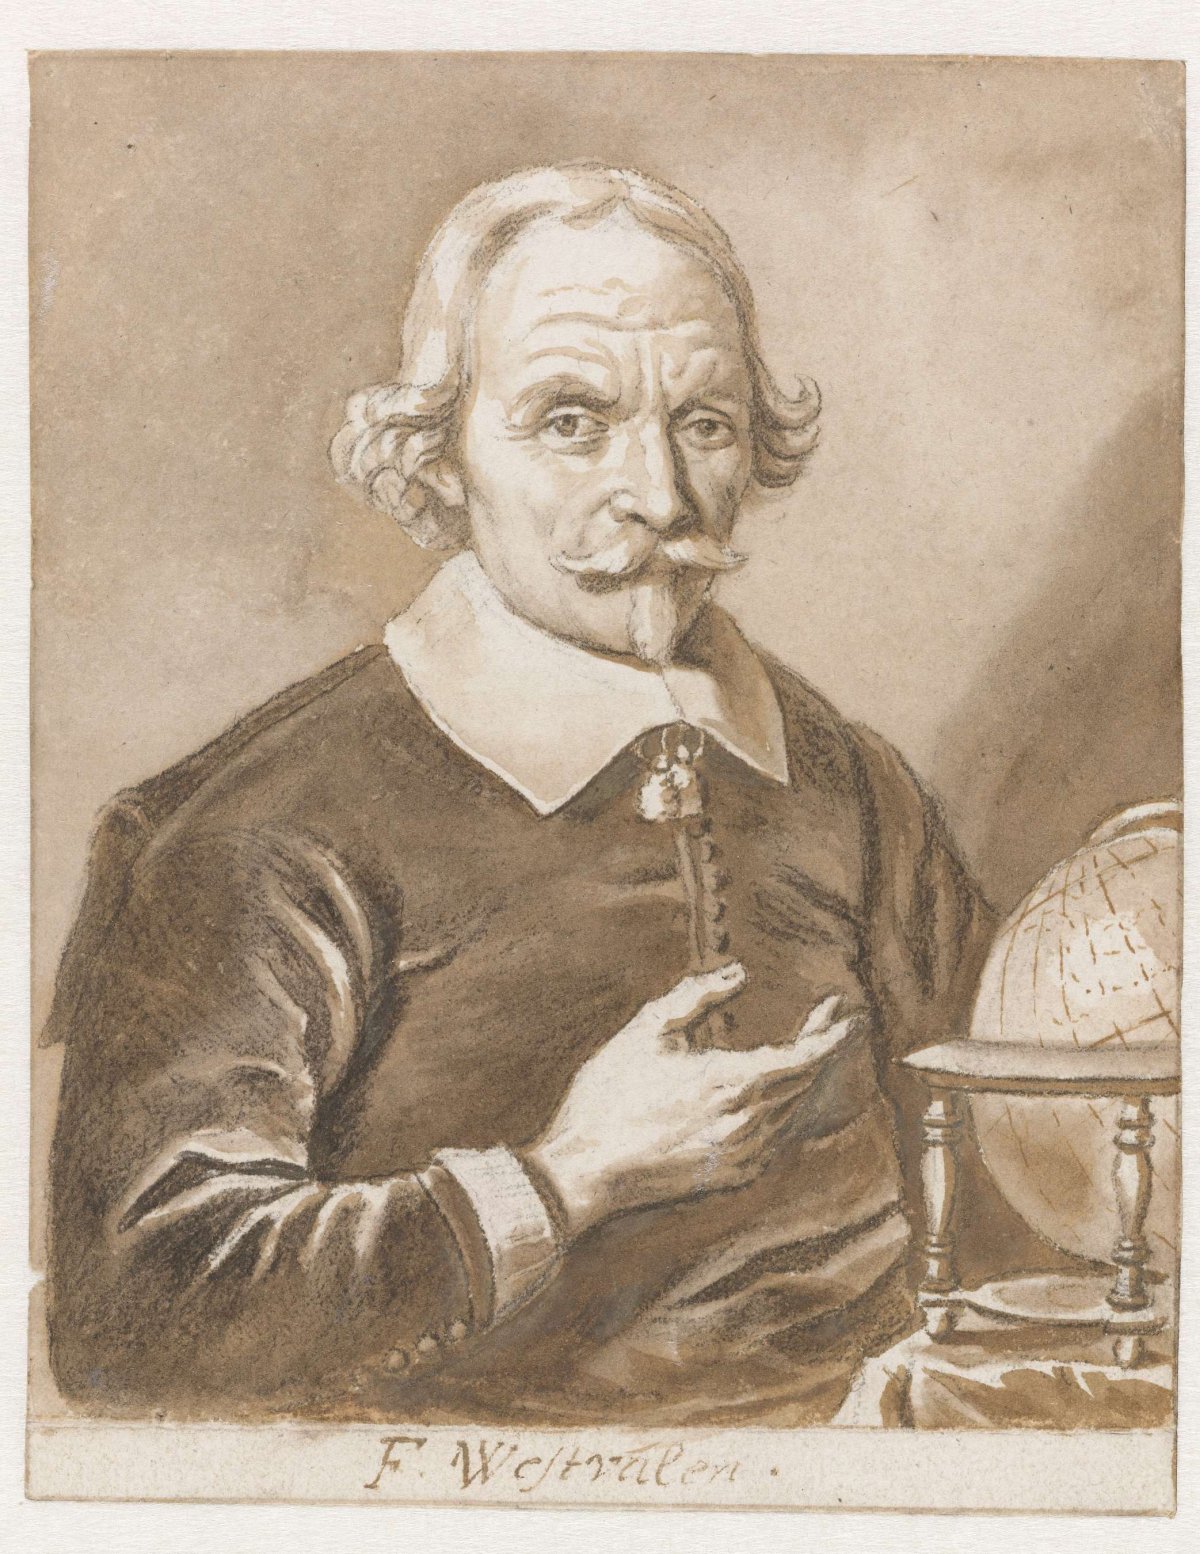 Portrait of Frederick Adriaensz. Westphalen, Jan de Bisschop, 1648 - 1653